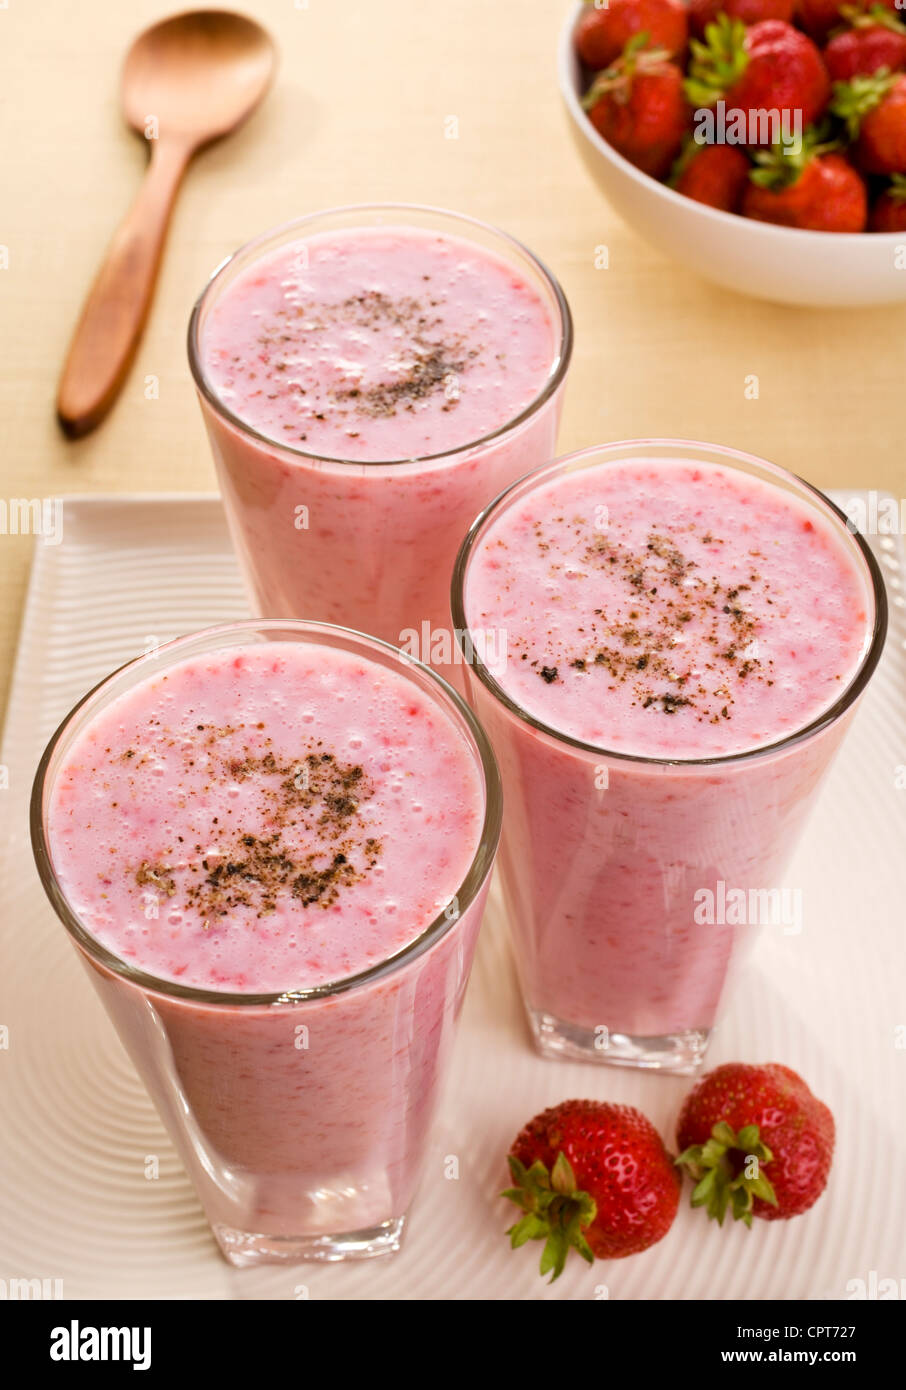 Très lumineuses, trois verres de lassi fraise sain, un Indien fait à partir de babeurre et fraises fraîches. Banque D'Images